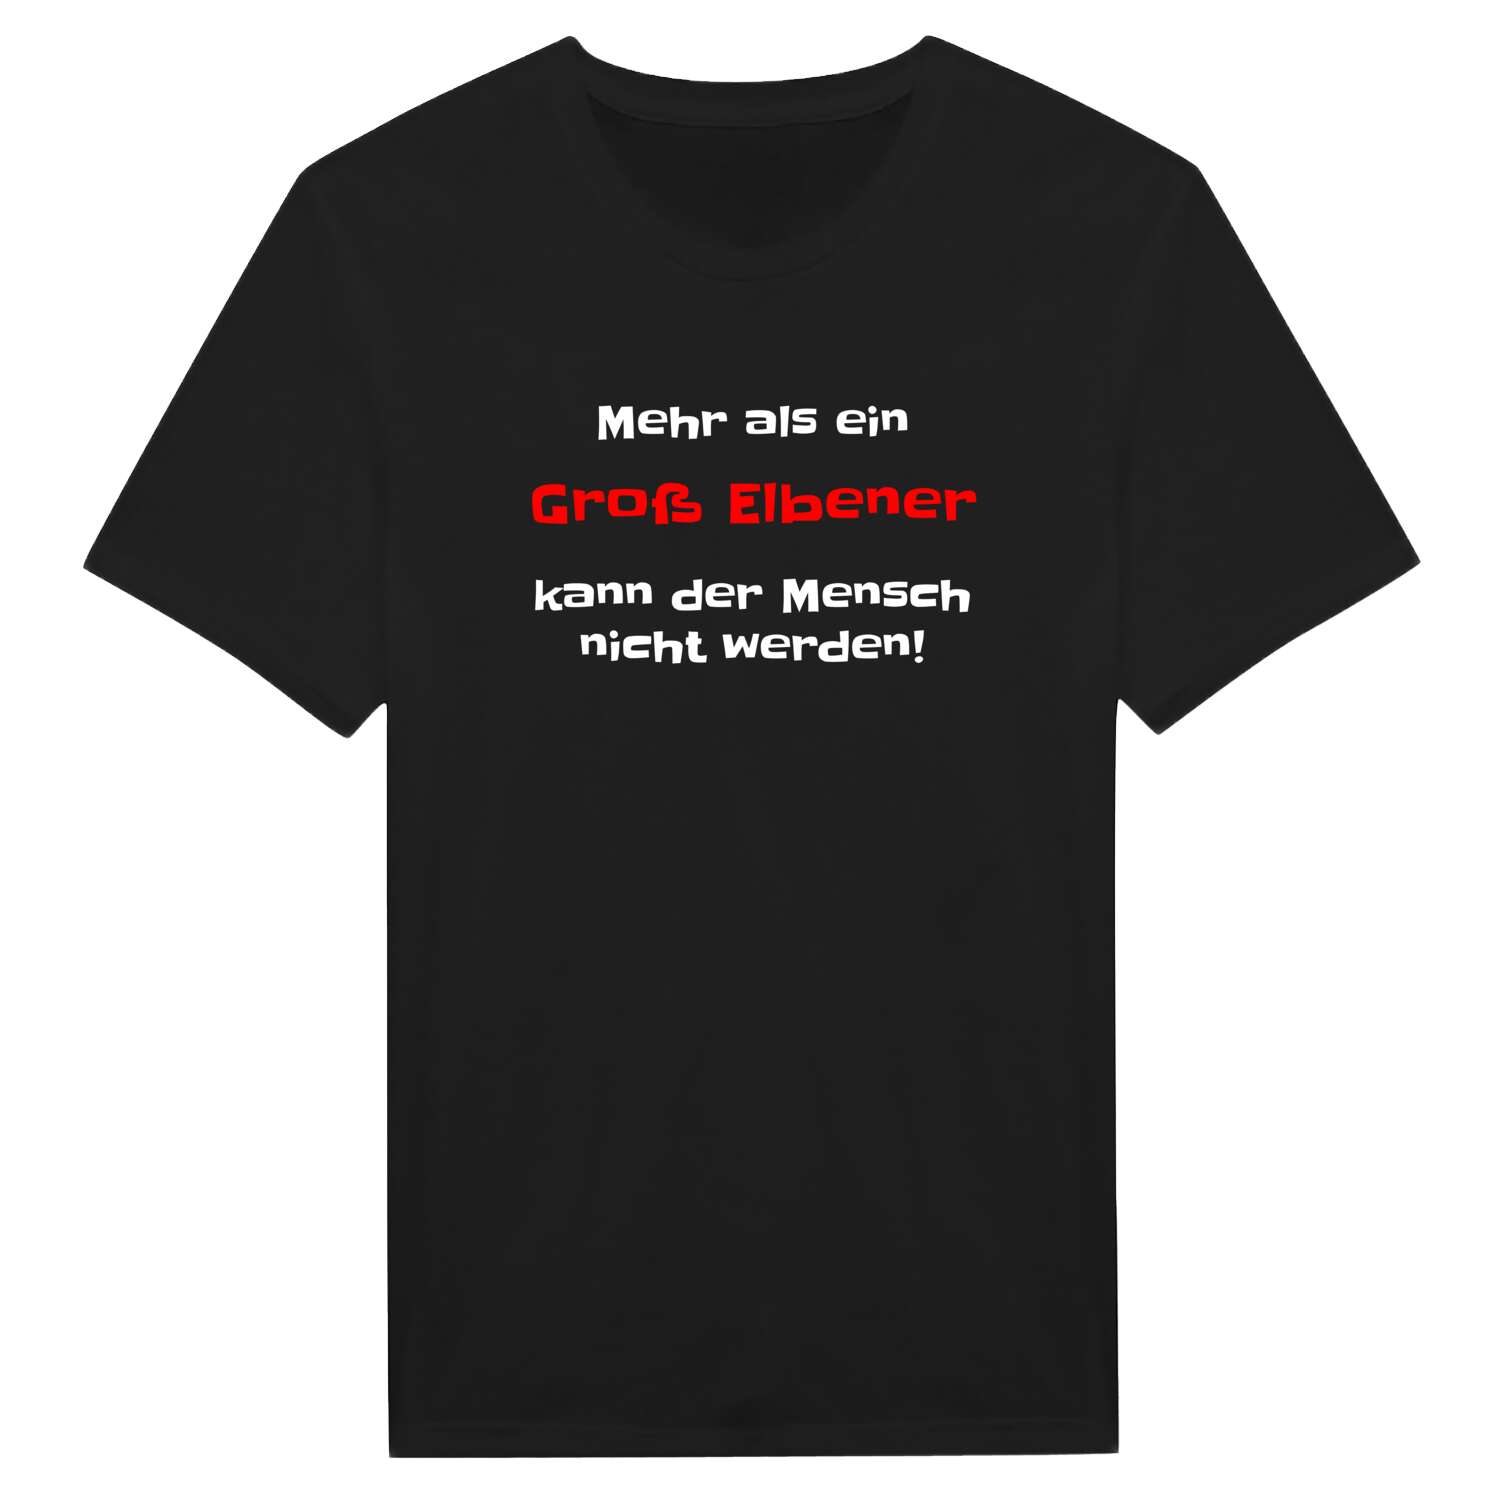 Groß Elbe T-Shirt »Mehr als ein«